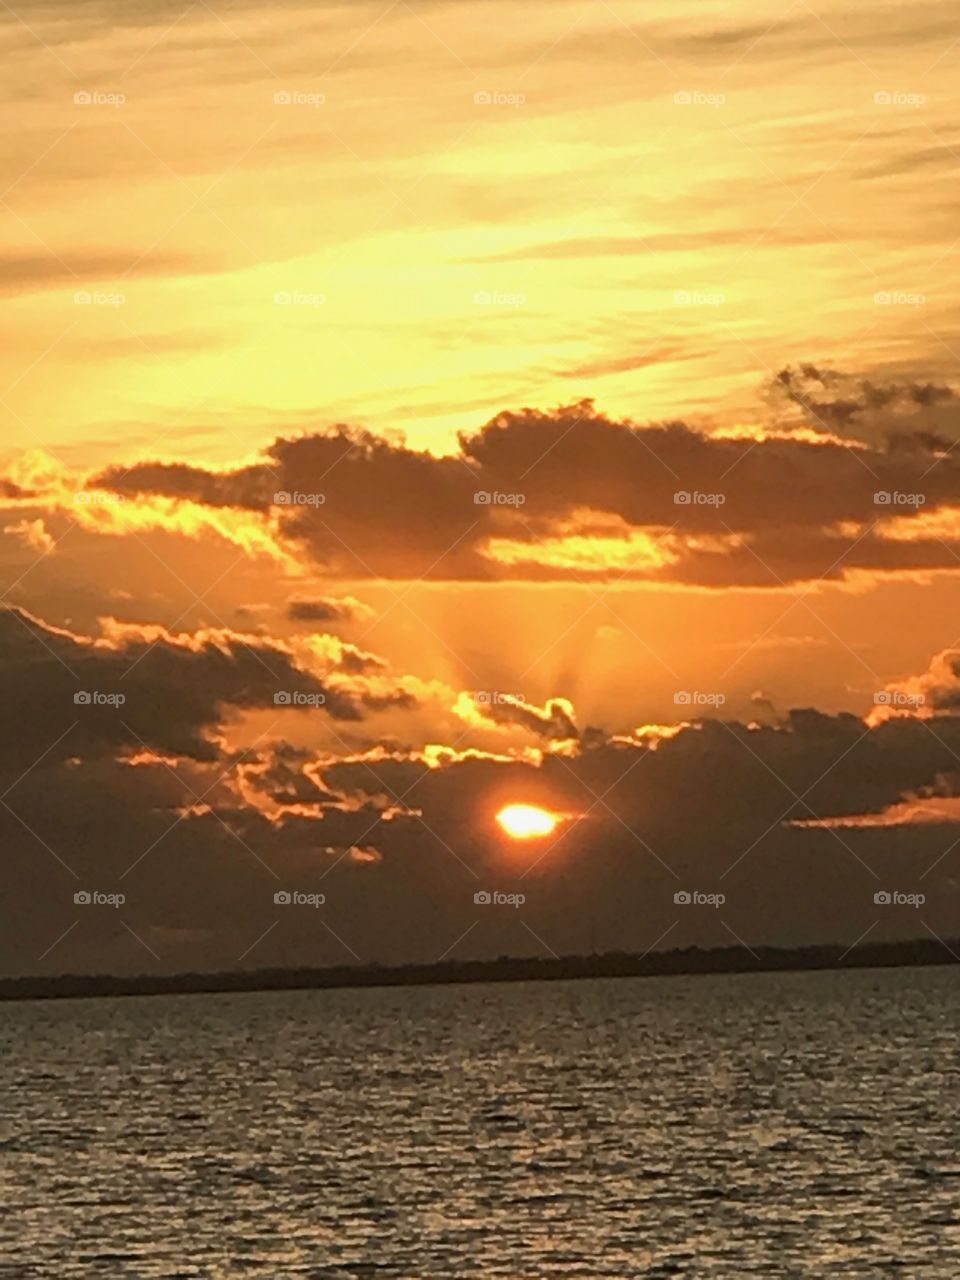 Sunrise #FloridaLife